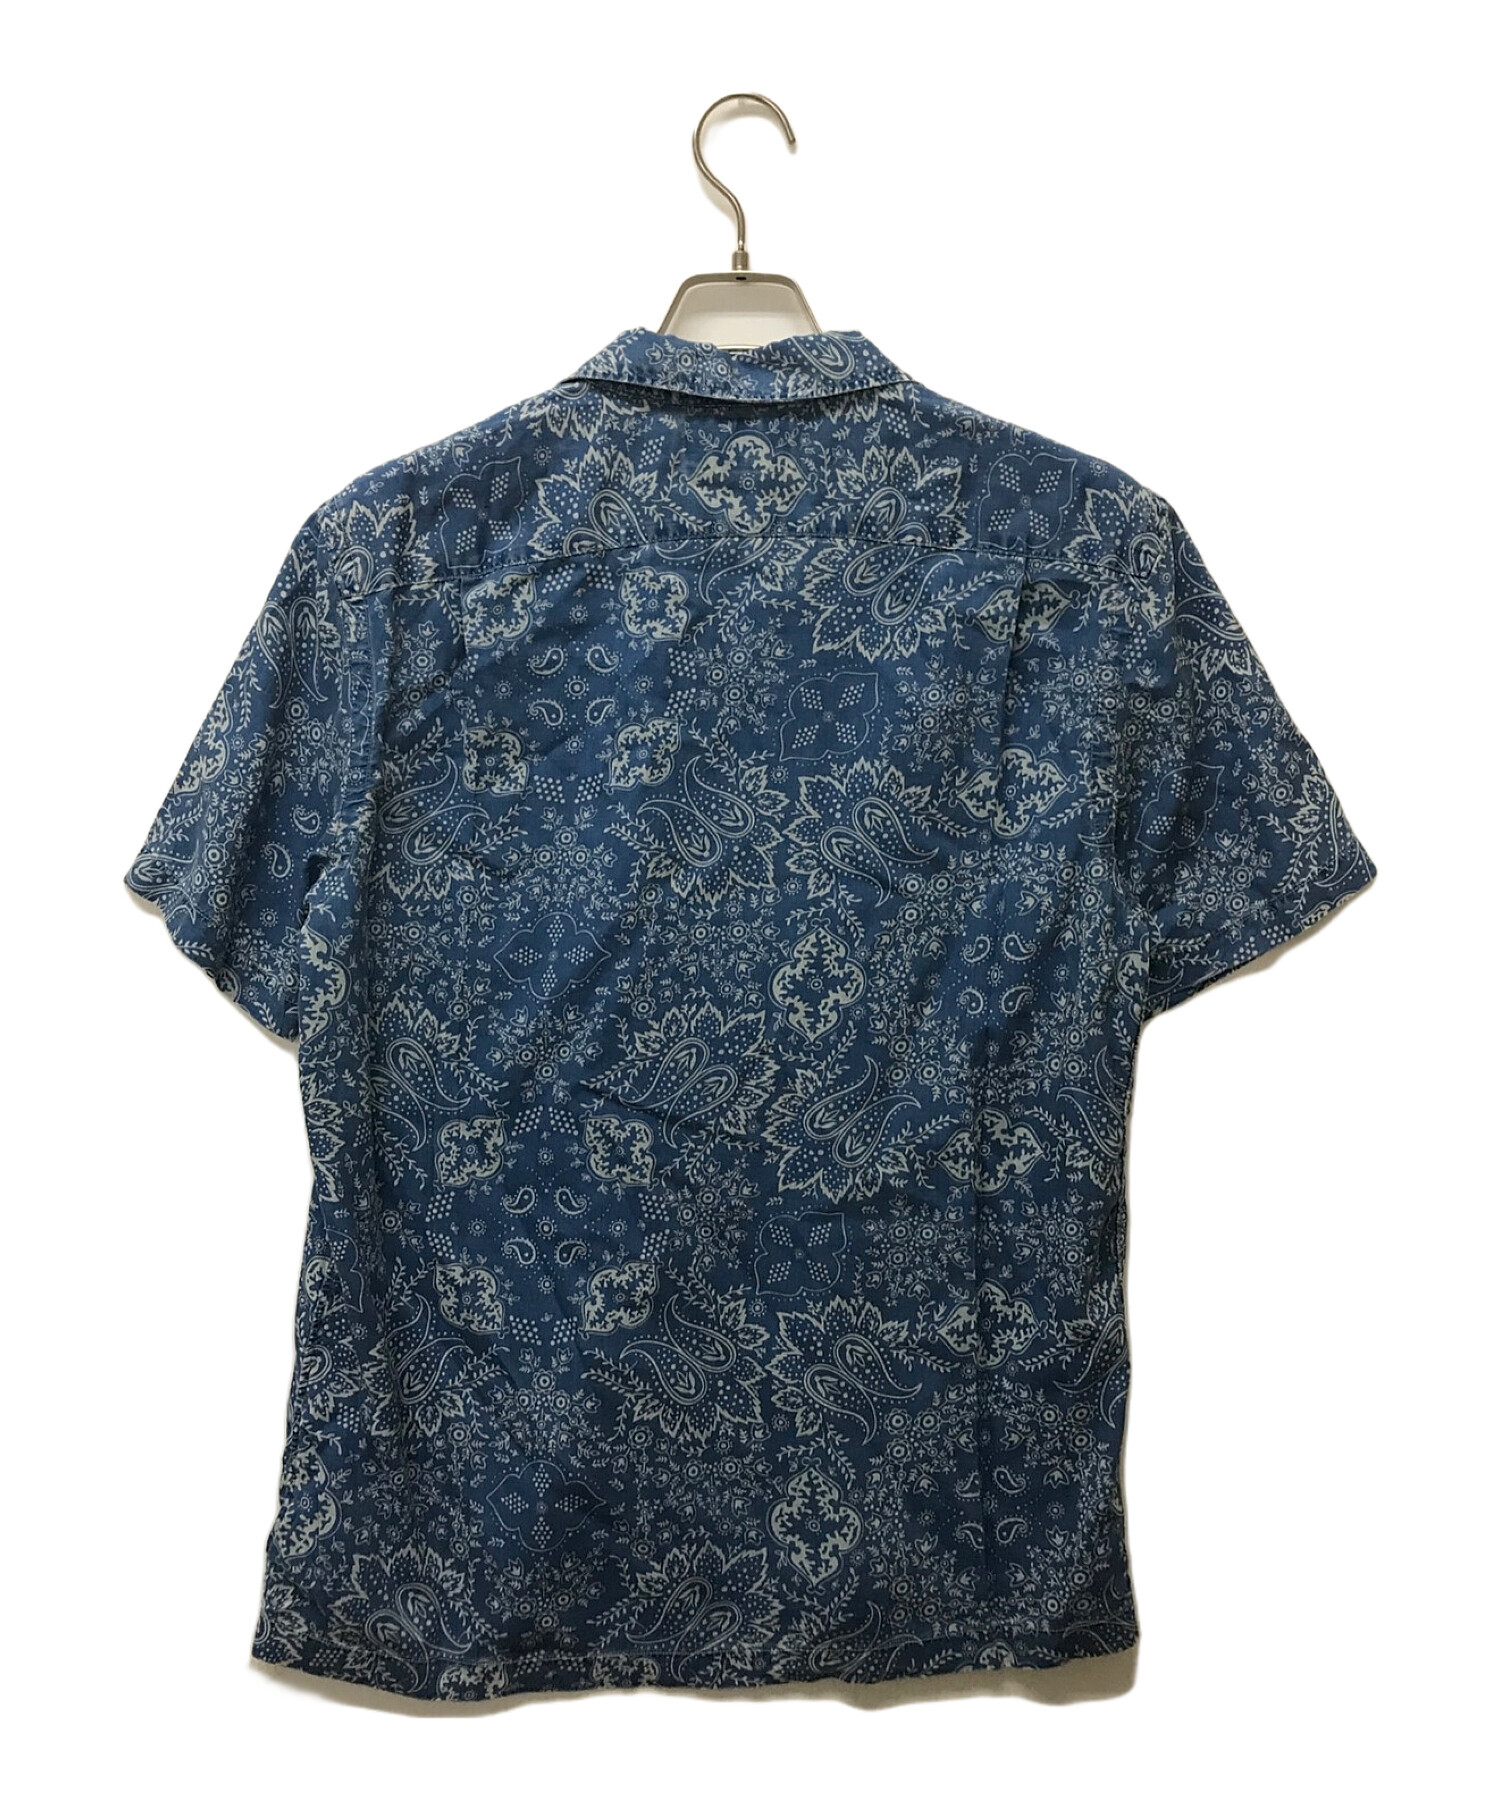 RRL (ダブルアールエル) インディゴバンダナプリントシャツ ブルー サイズ:M